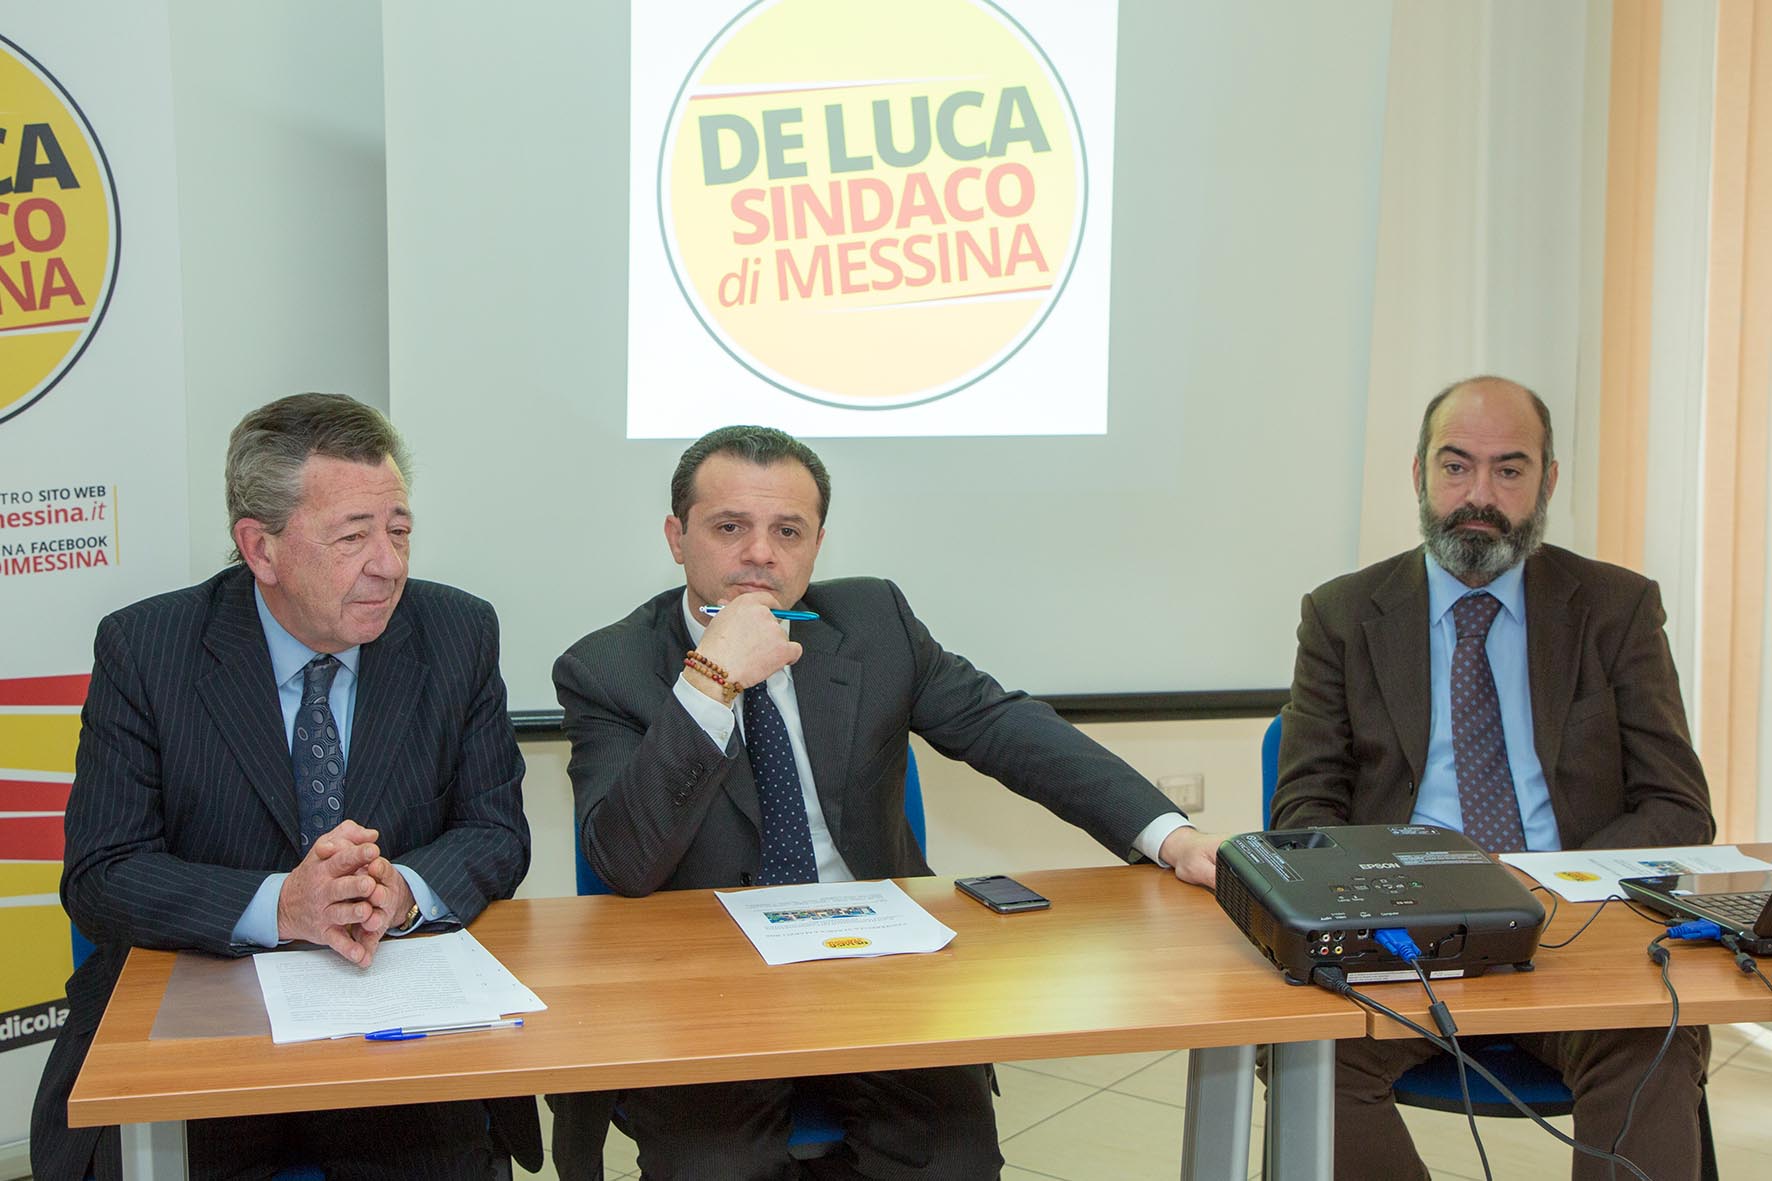 Scuole, De Luca bacchetta l'amministrazione: "Gestione fallimentare"